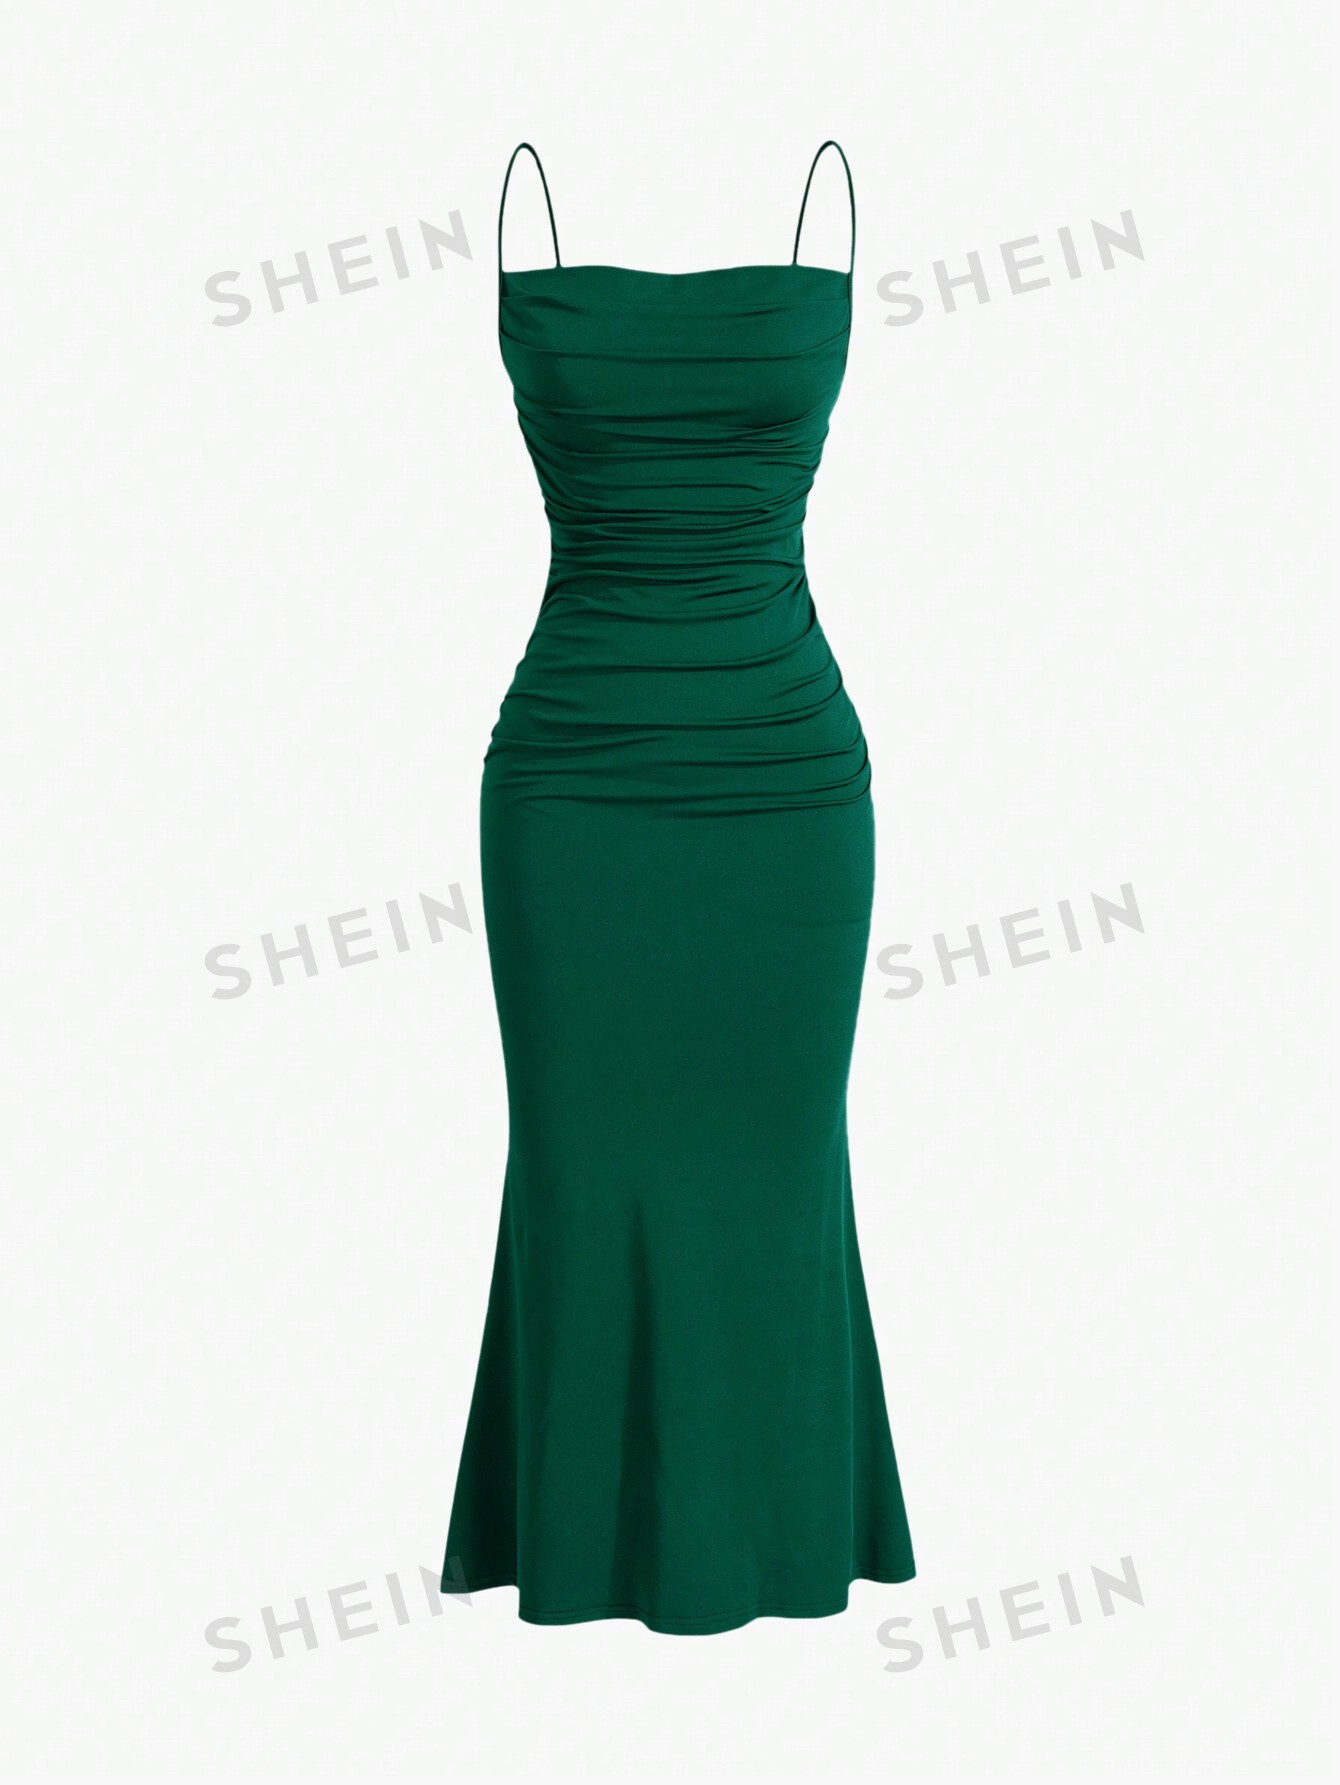 shein mod однотонное платье с гофрированной спиной и расклешенным подолом синий SHEIN MOD однотонное плиссированное платье с ремешками и подолом «рыбий хвост», темно-зеленый